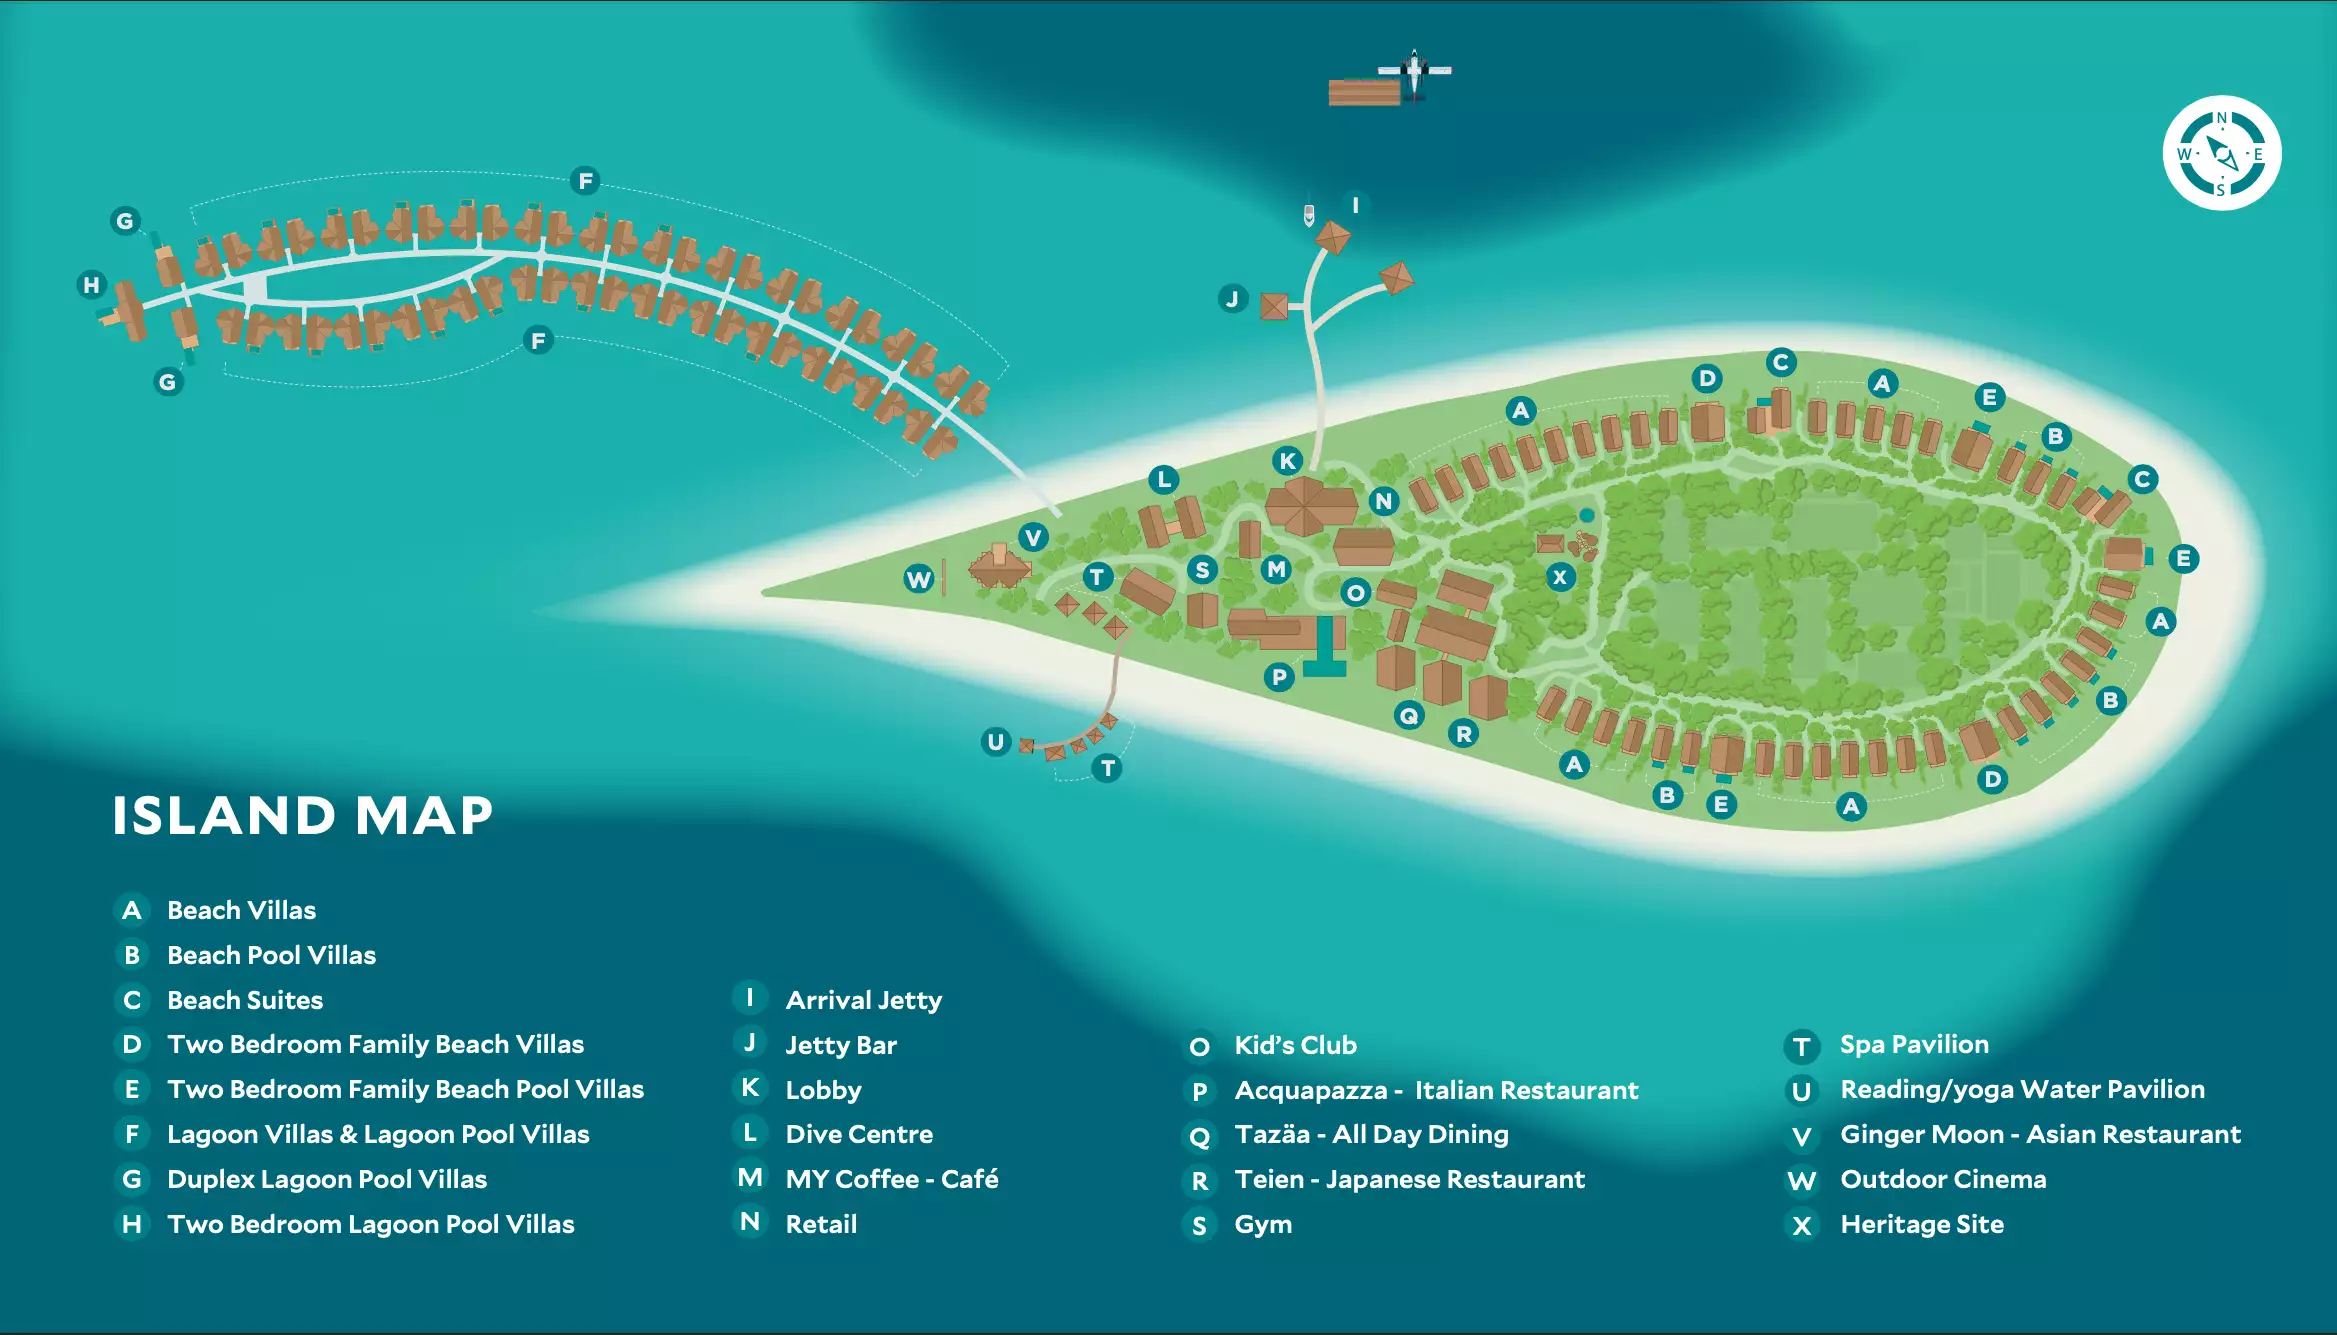 Cora-Cora-Maldives-Island-Map.png